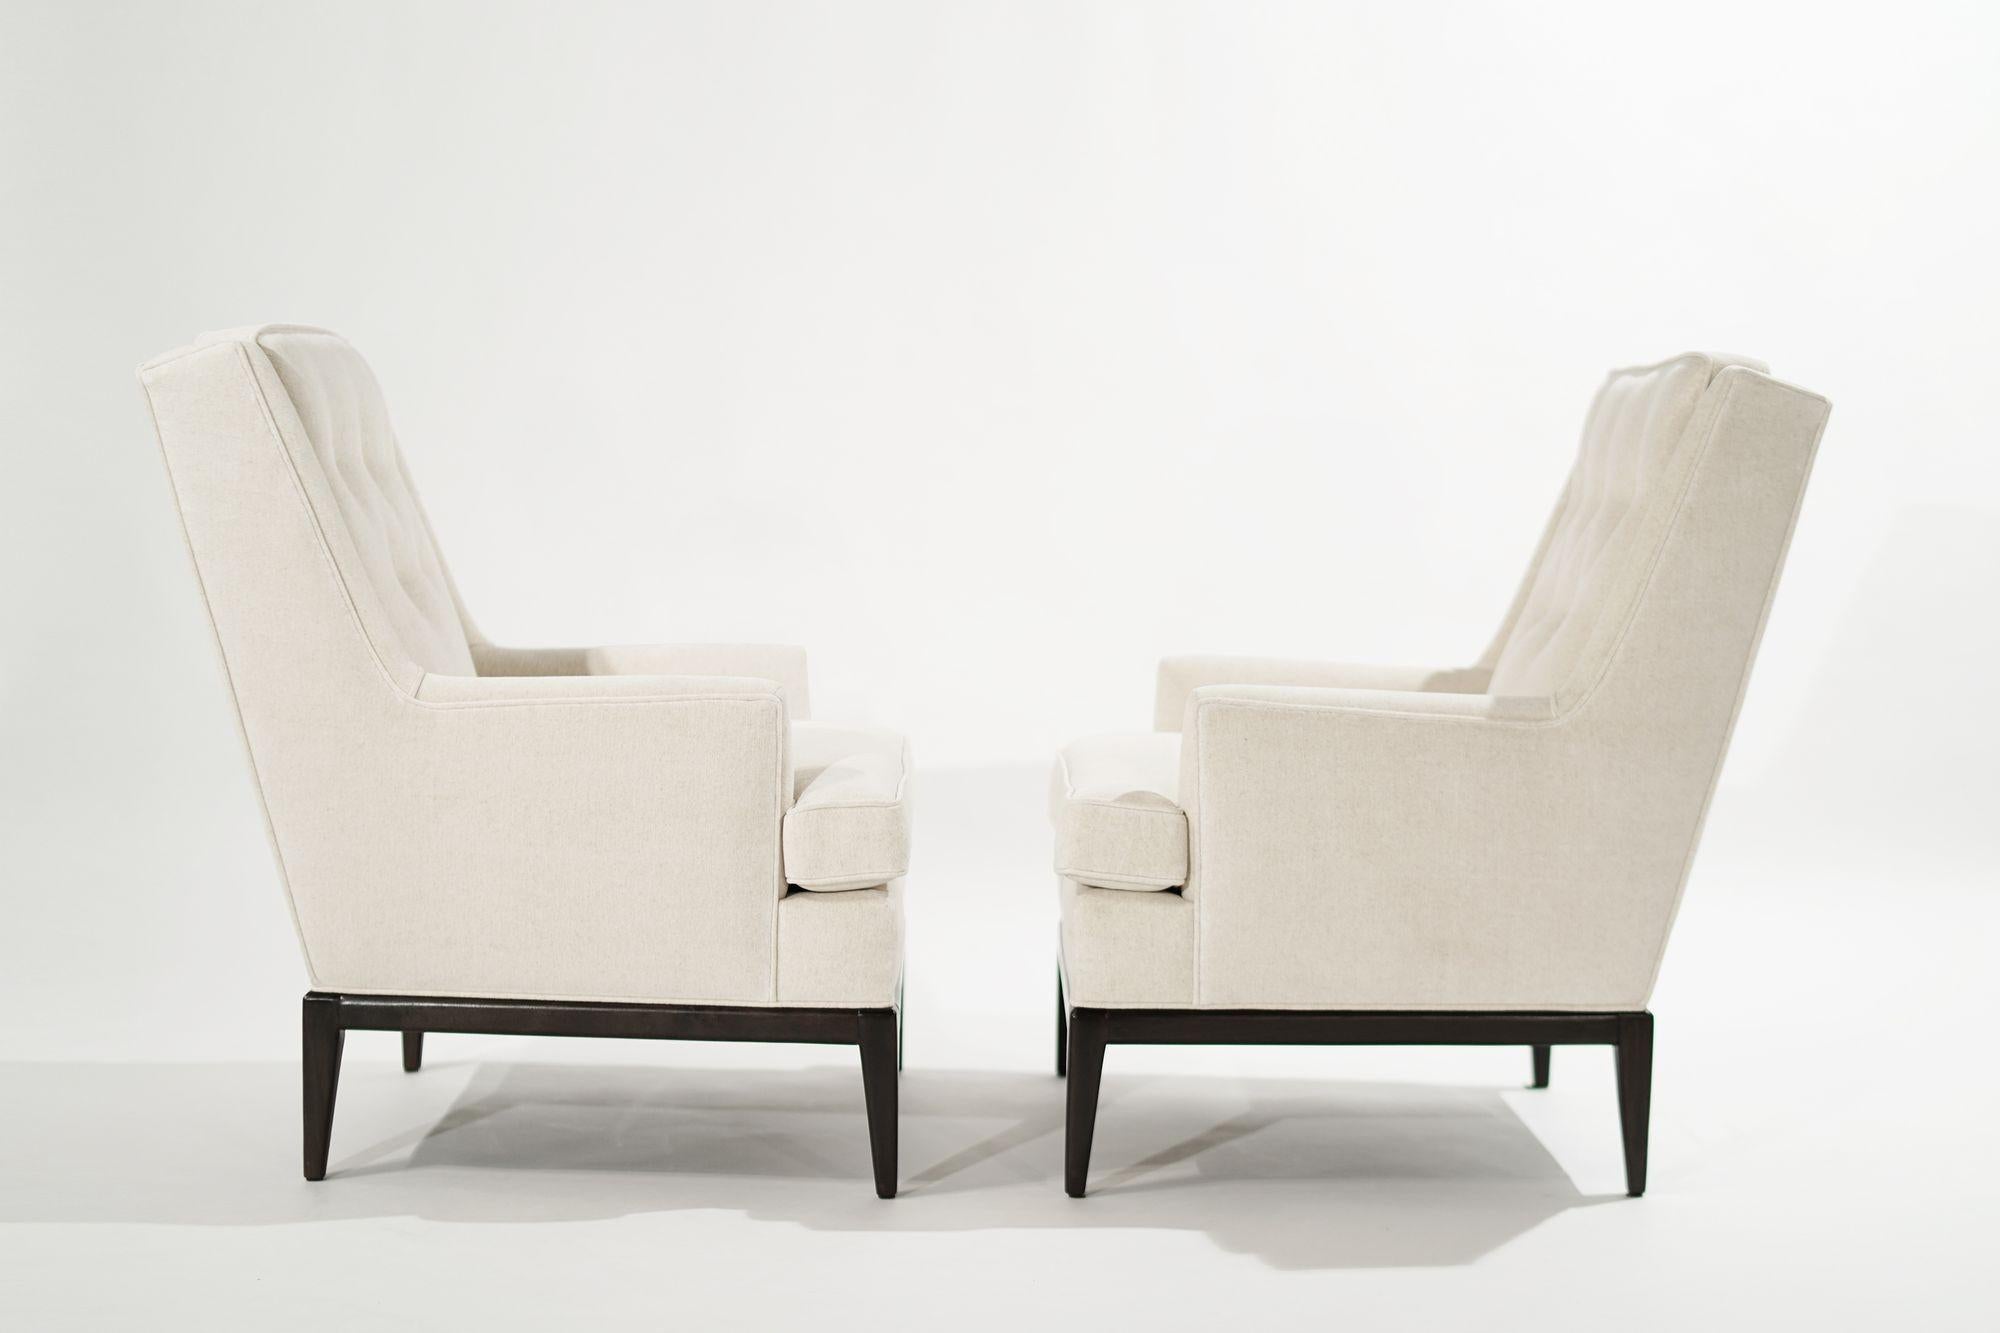 Ensemble de chaises longues à dossier haut conçues par T.H. Robsjohn-Gibbings pour Widdicomb, vers 1950-1959. Entièrement restauré, base en noyer refaite dans notre finition noyer foncé. Rembourré en laine de haute qualité blanc cassé par Holly